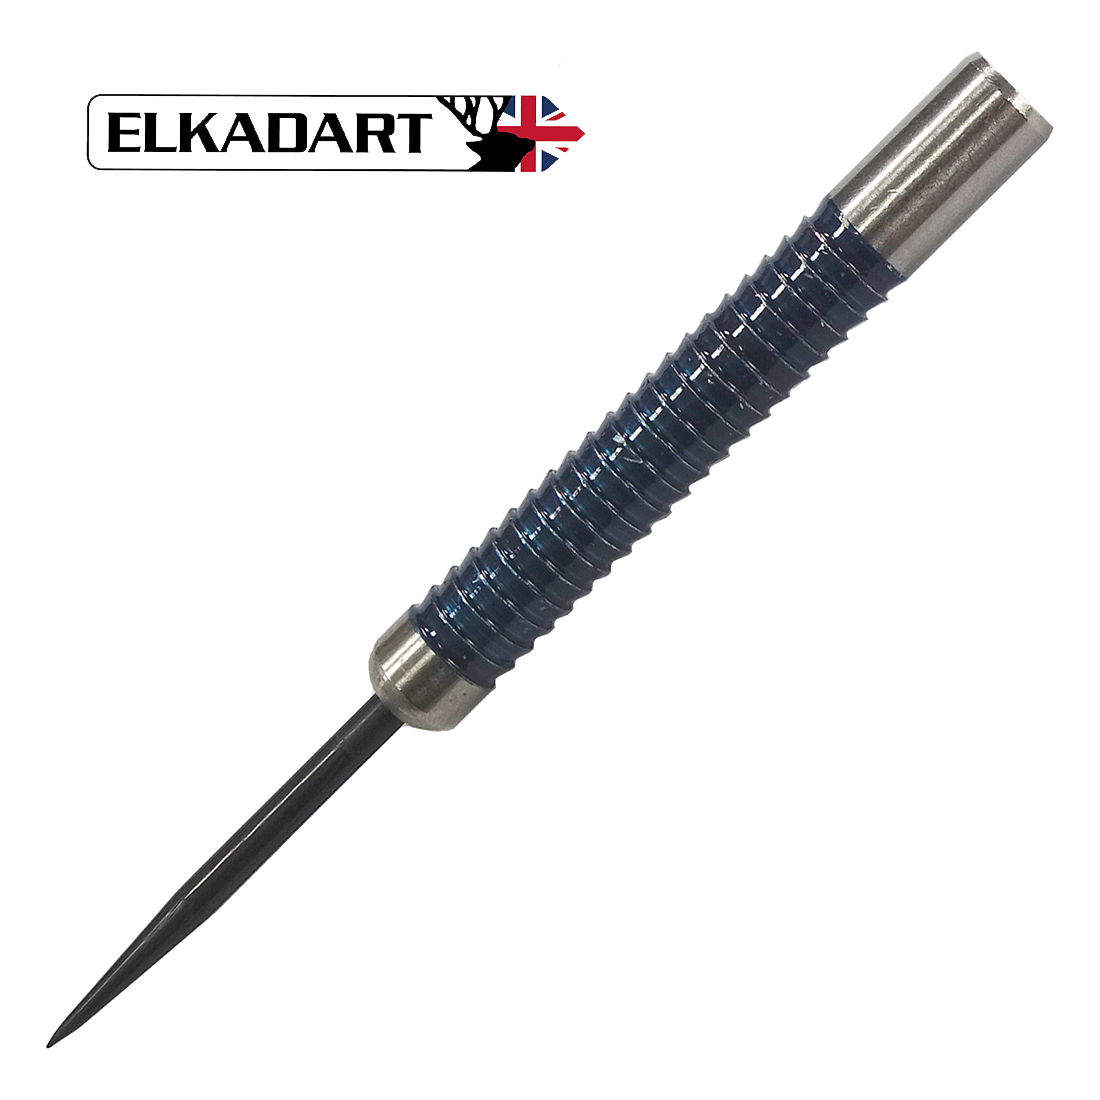 Review of Elkadart Razor 19g Steel Tip Darts